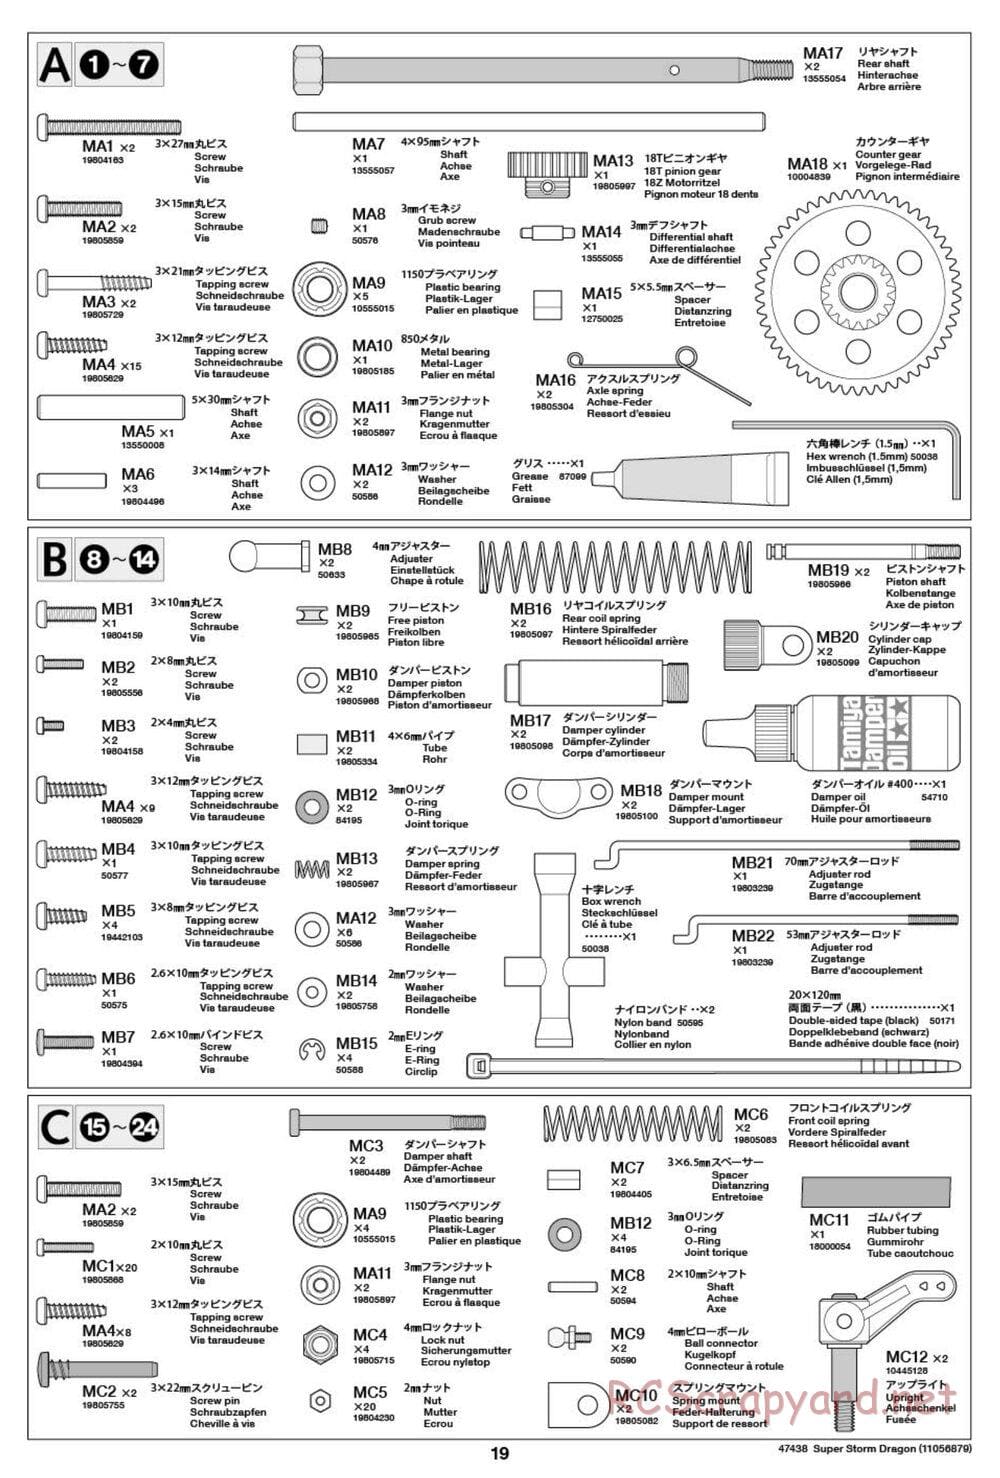 Tamiya - Super Storm Dragon Chassis - Manual - Page 19